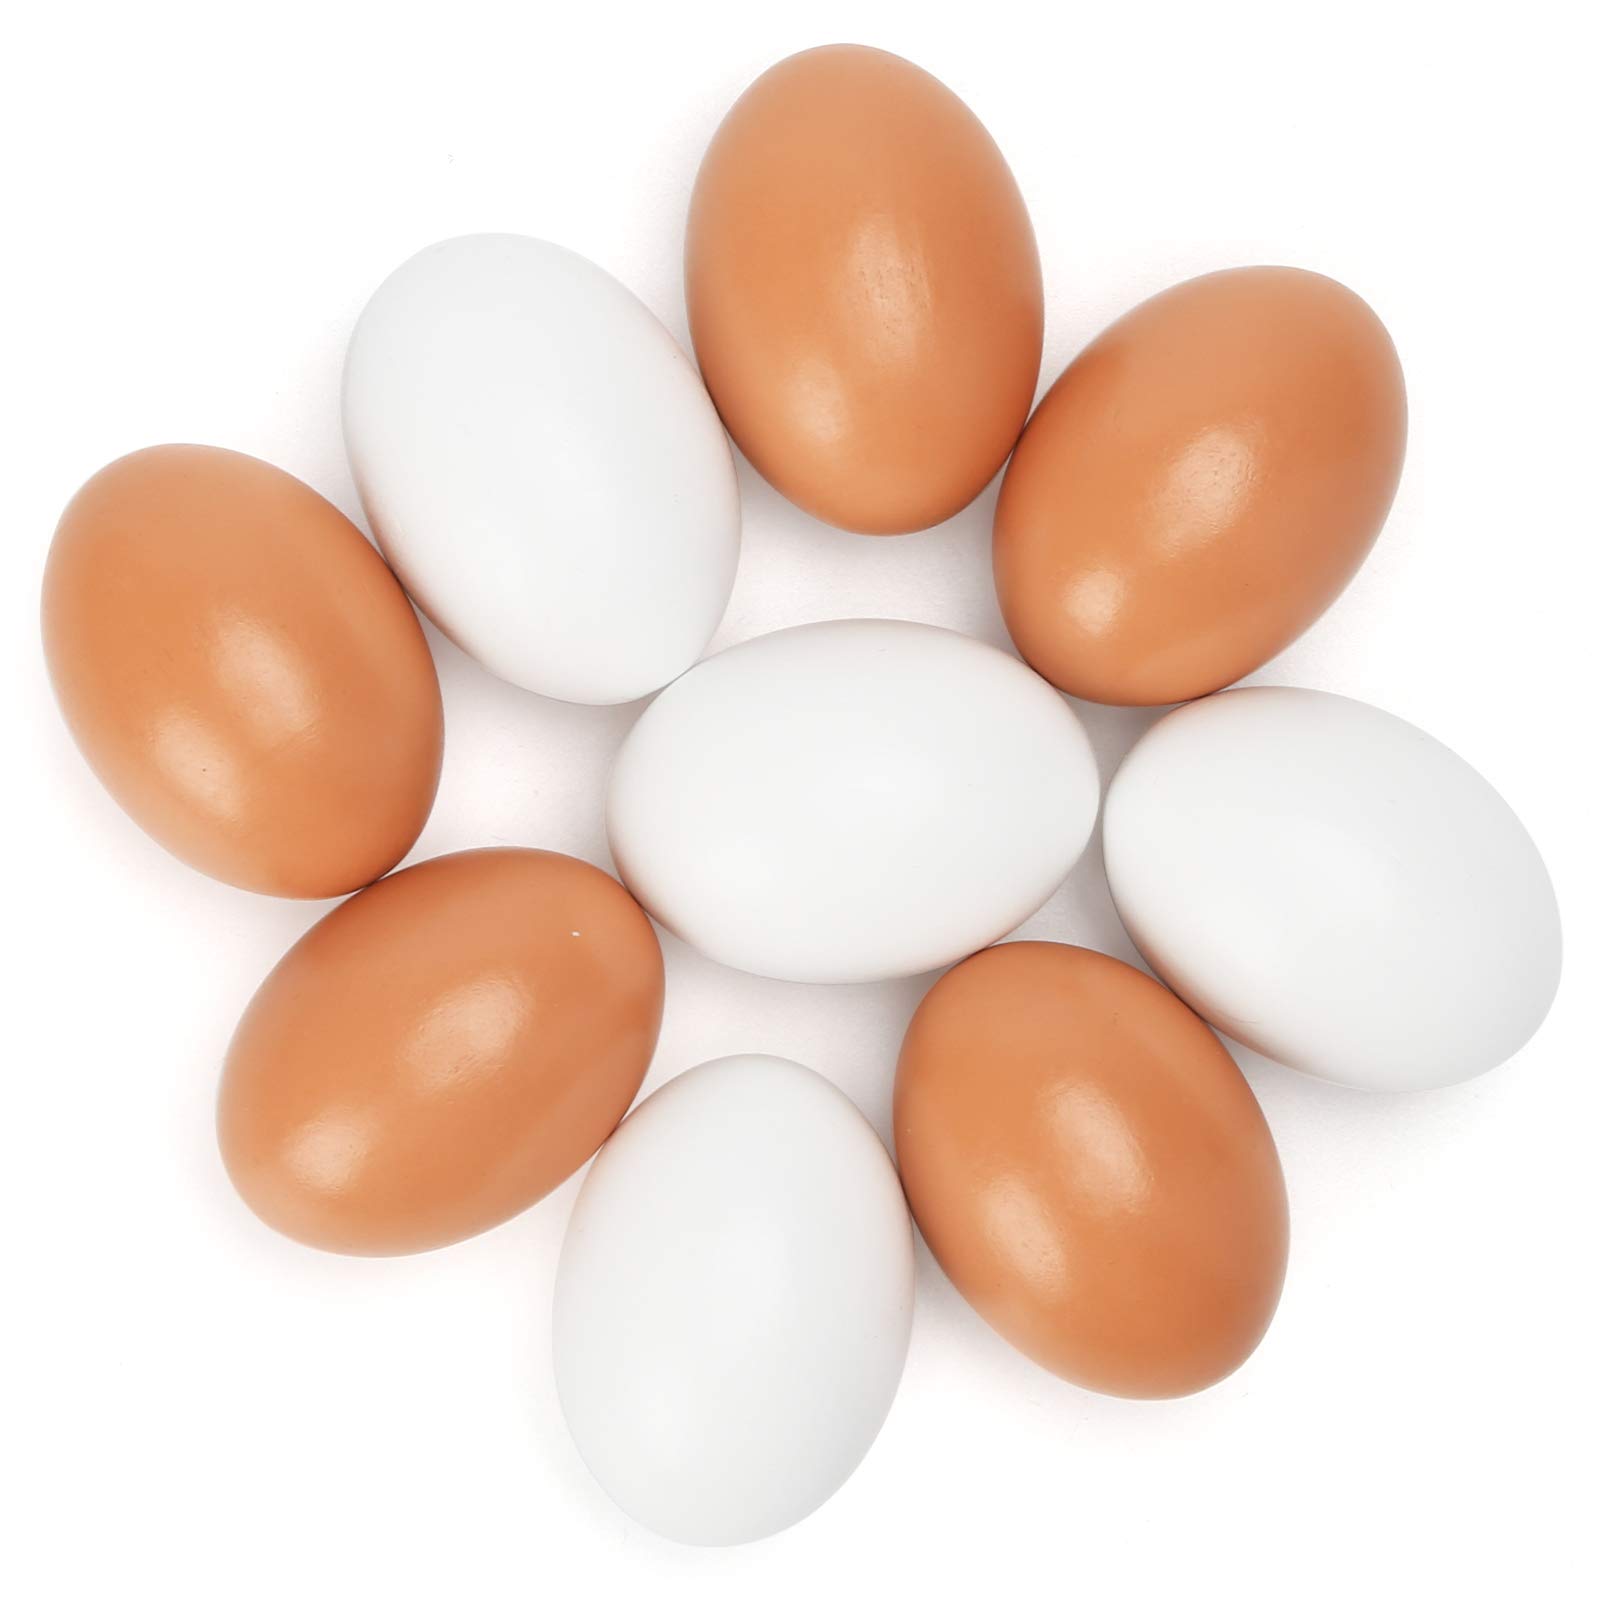 Trứng gỗ màu sắc phong phú HAKACC Easter với 2 màu sắc rực rỡ sẽ khiến cho lễ phục sinh của bạn trở nên đầy màu sắc và sinh động hơn bao giờ hết. Hãy thưởng thức những chiếc trứng gỗ đẹp mắt và tạo cho mình một không gian vừa ấm cúng vừa đầy màu sắc.